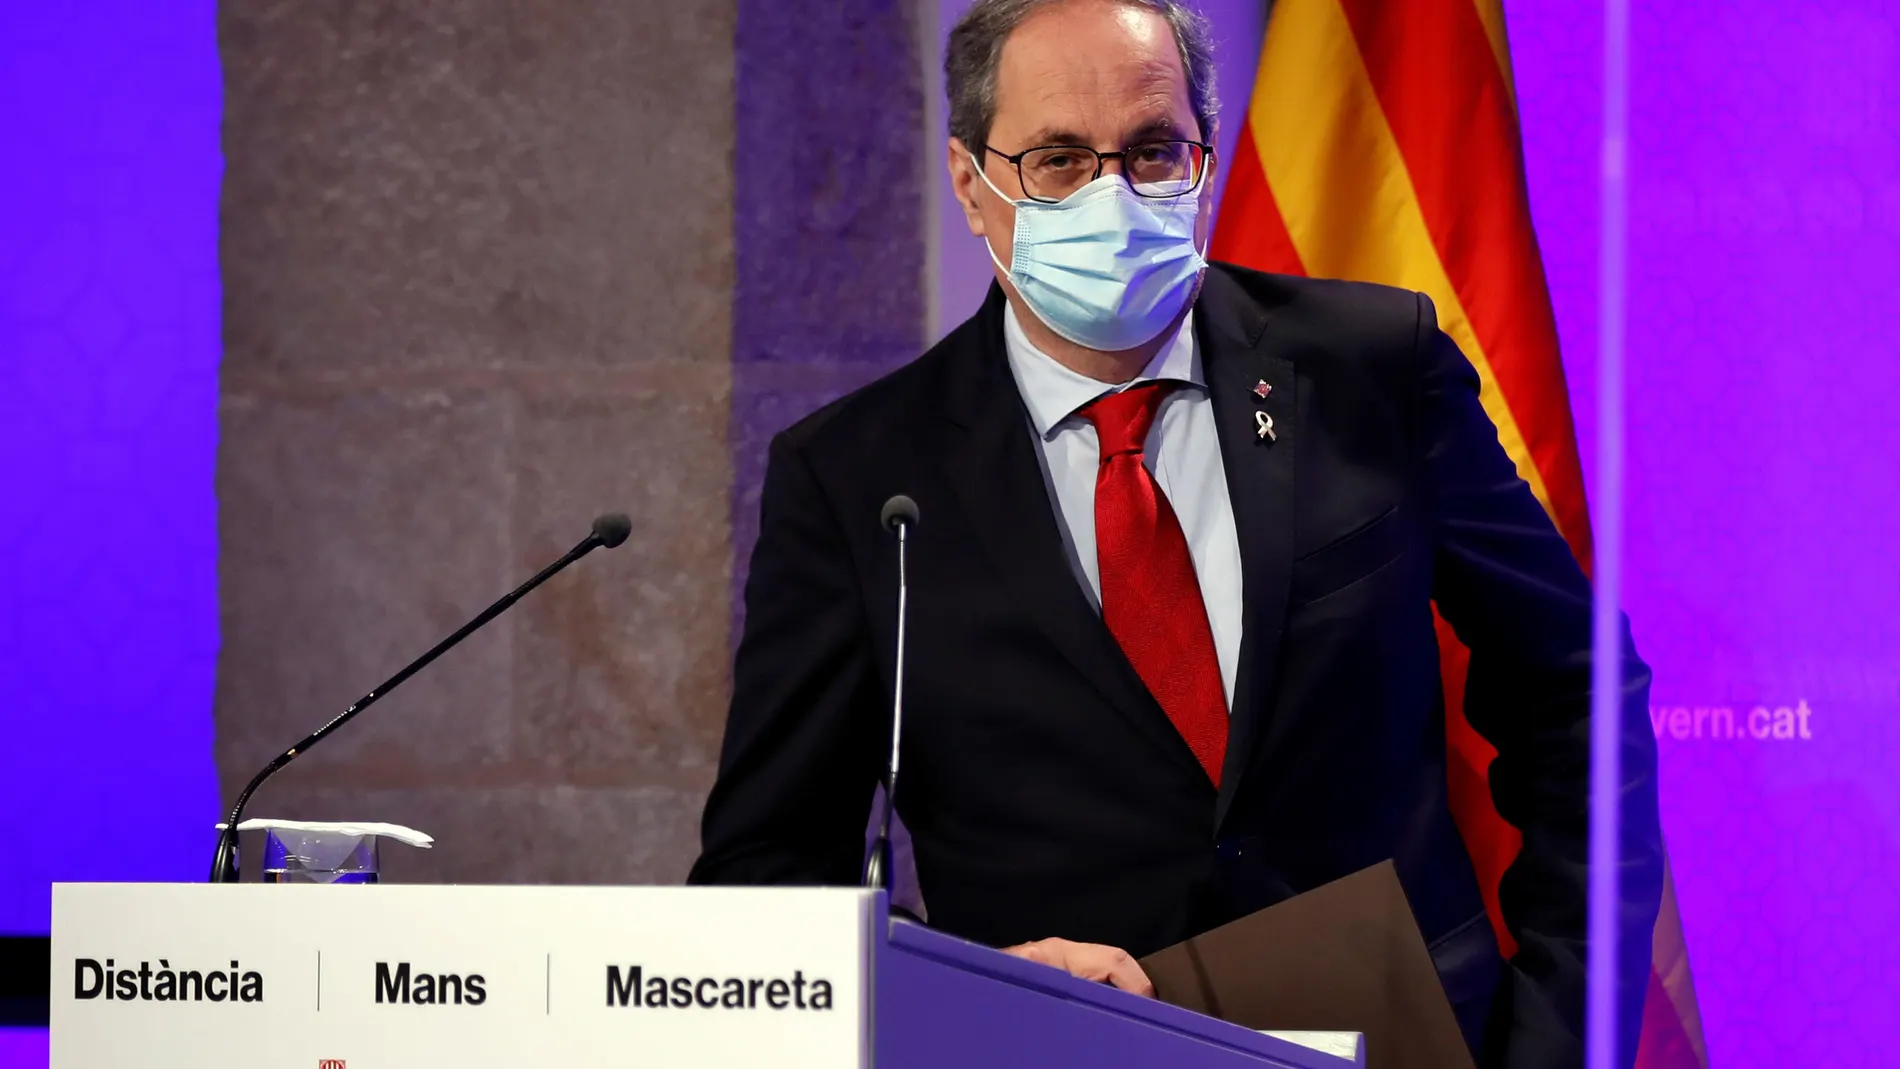 El presidente de la Generalitat, Quim Torra, durante la comparecencia que ha realizado este lunes, en la que ha asegurado que "no acepta" la decisión judicial de la magistrada que ha rechazado el confinamiento parcial en el Segrià.